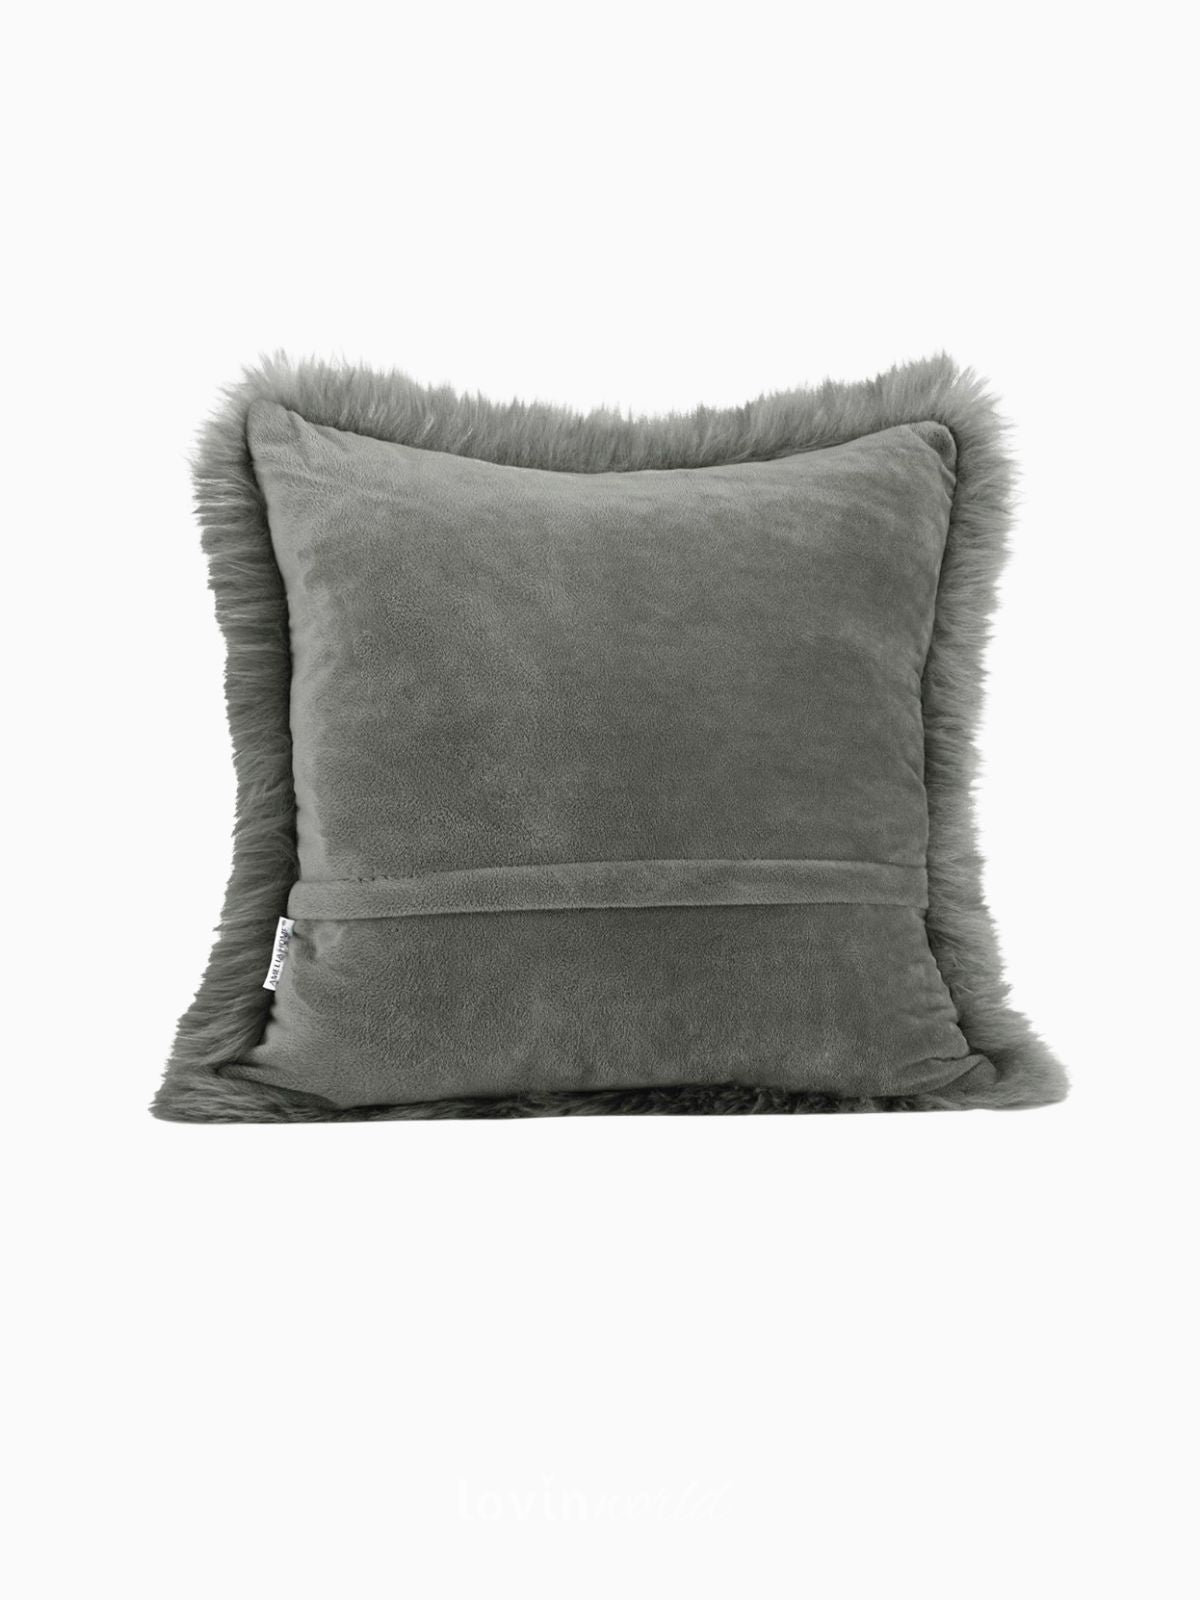 2 Federe per cuscino Dokka in colore grigio scuro 45x45 cm.-2